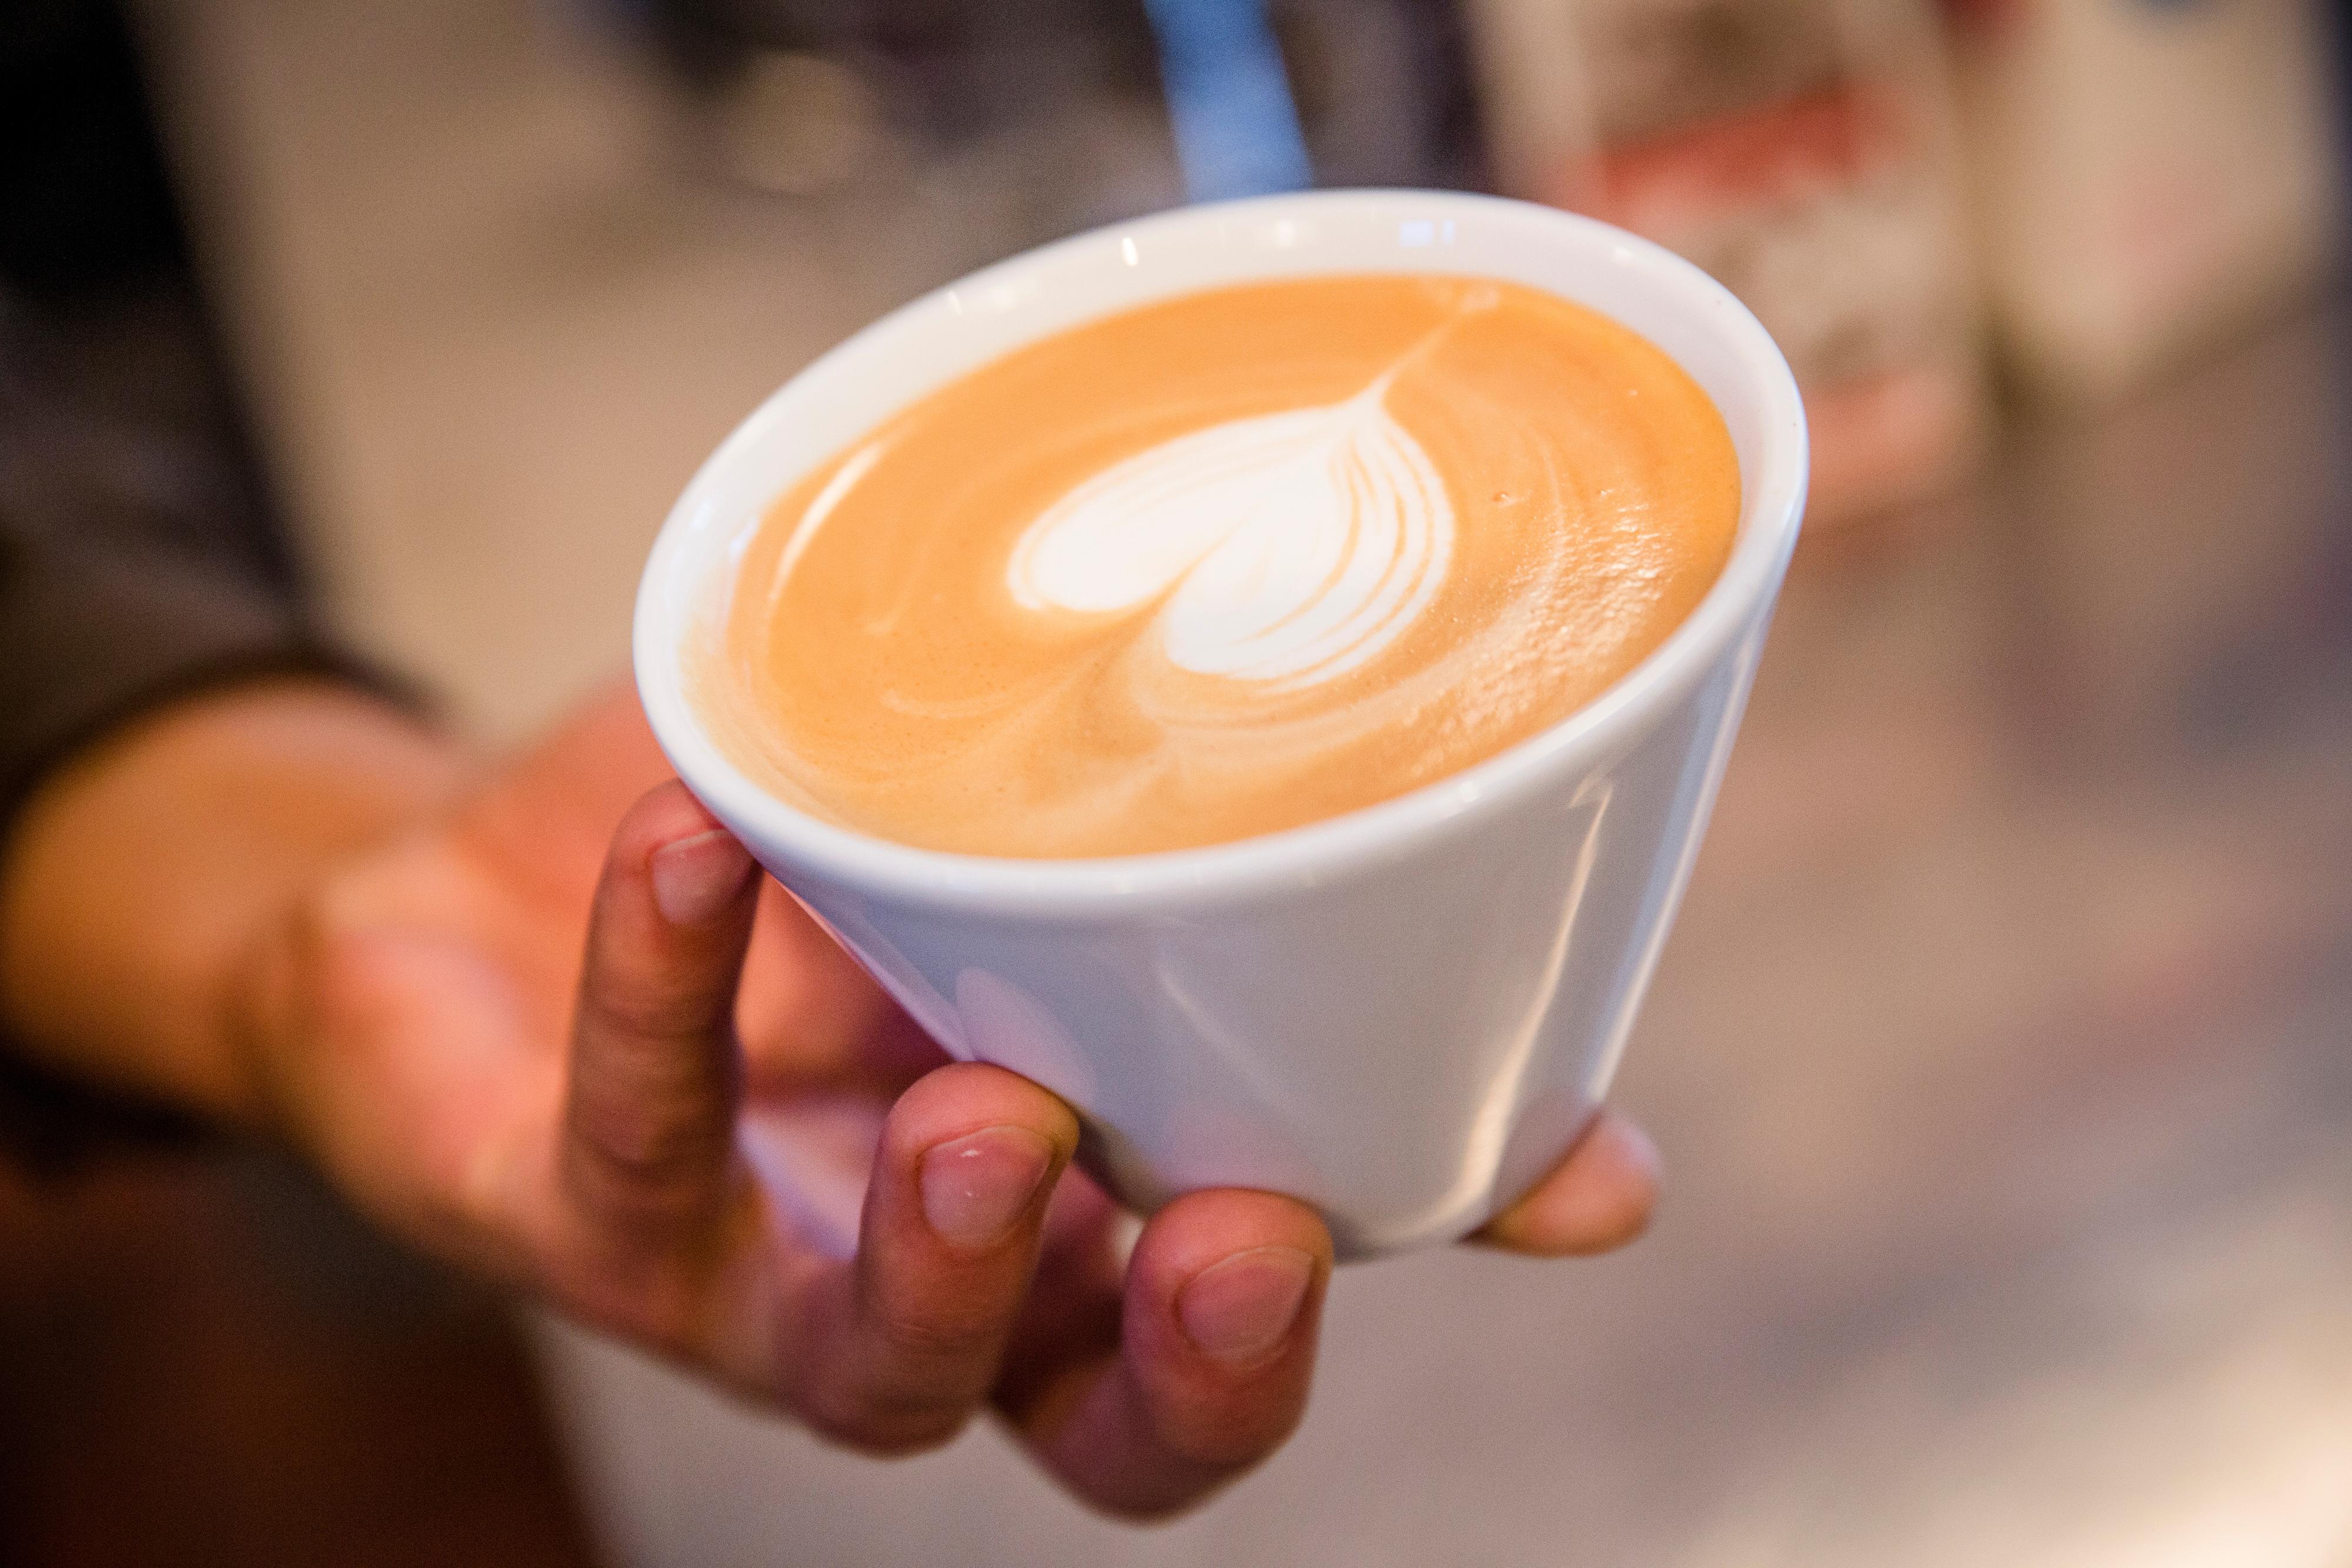 SNERK-FRI: Hvorfor blir det ikke snerk på kaffe latte’n?